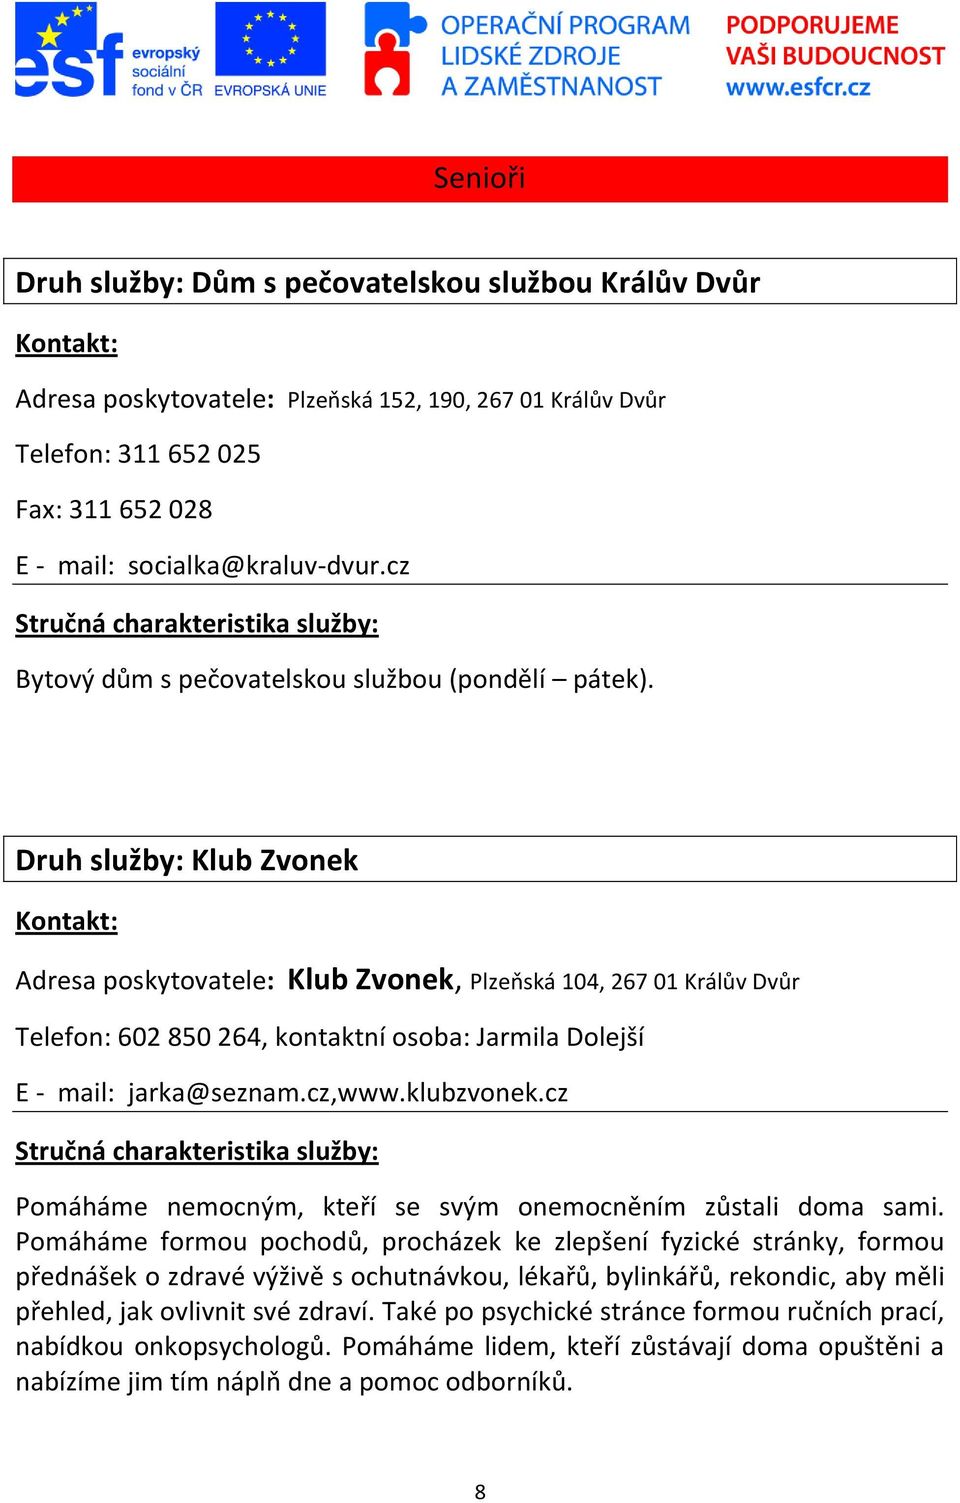 Druh služby: Klub Zvonek Adresa poskytovatele: Klub Zvonek, Plzeňská 104, 267 01 Králův Dvůr Telefon: 602 850 264, kontaktní osoba: Jarmila Dolejší E - mail: jarka@seznam.cz,www.klubzvonek.